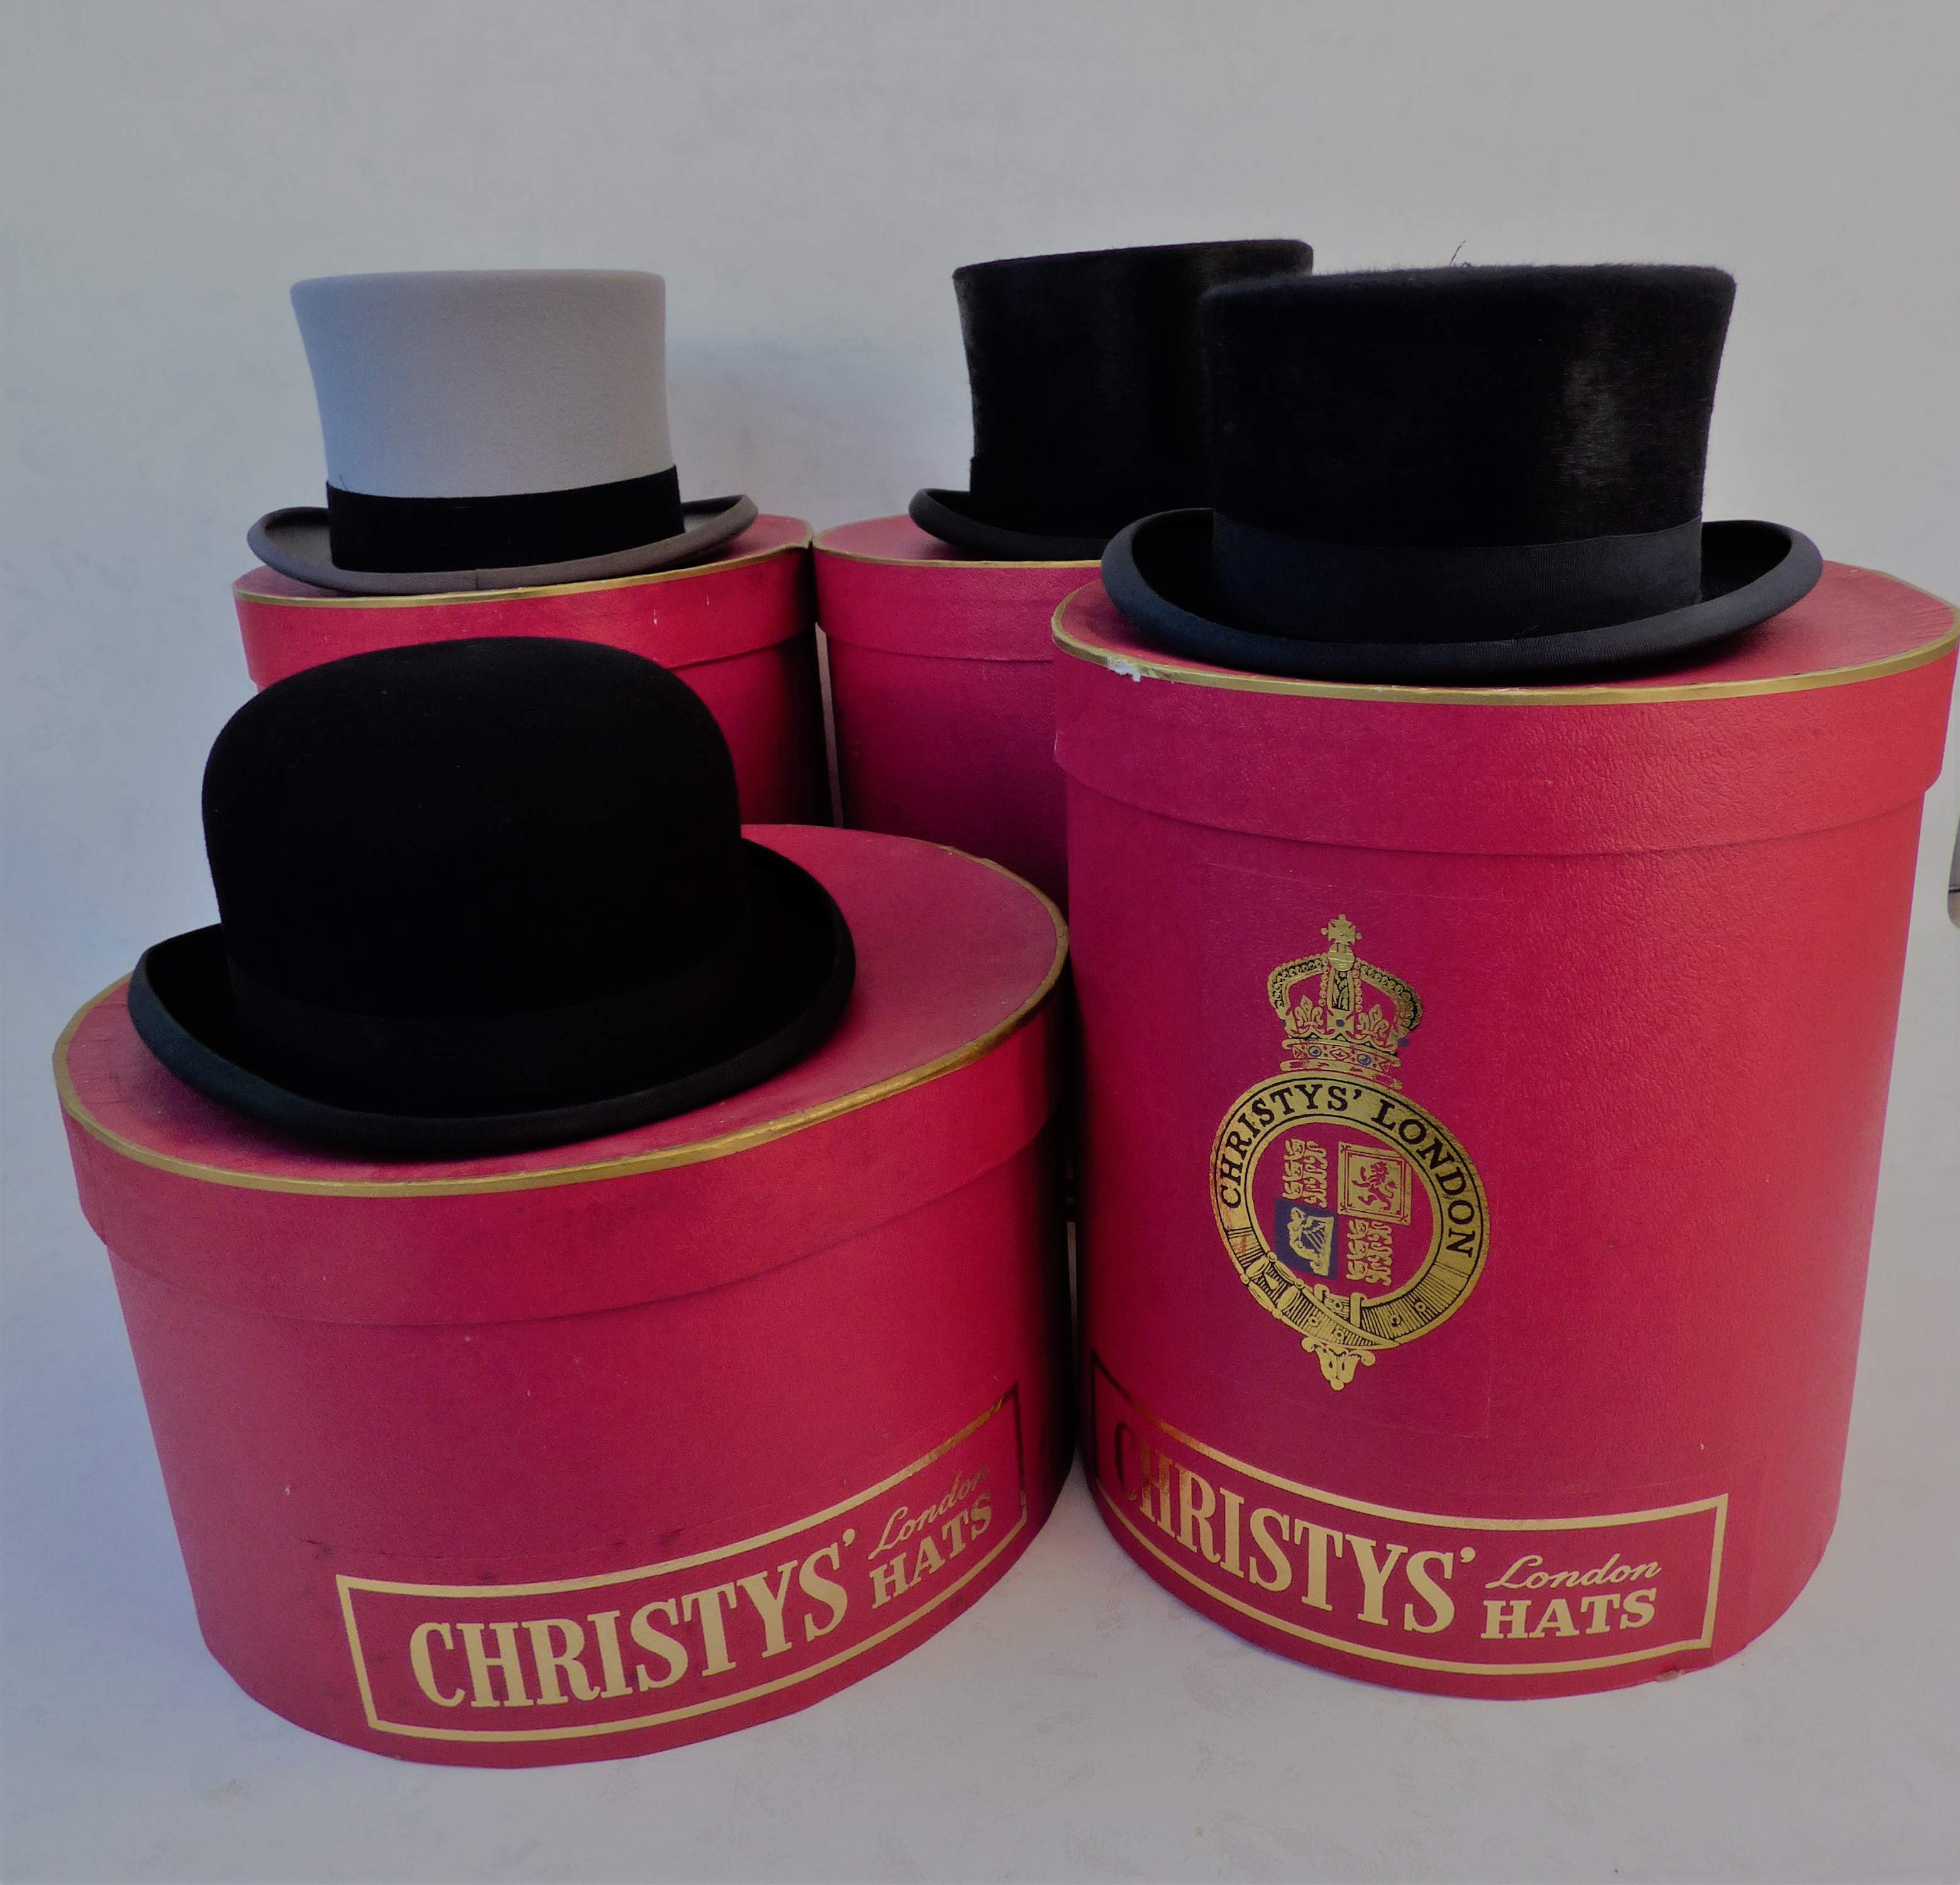 Nieuw in de collectie: Originele Christy's hoeden